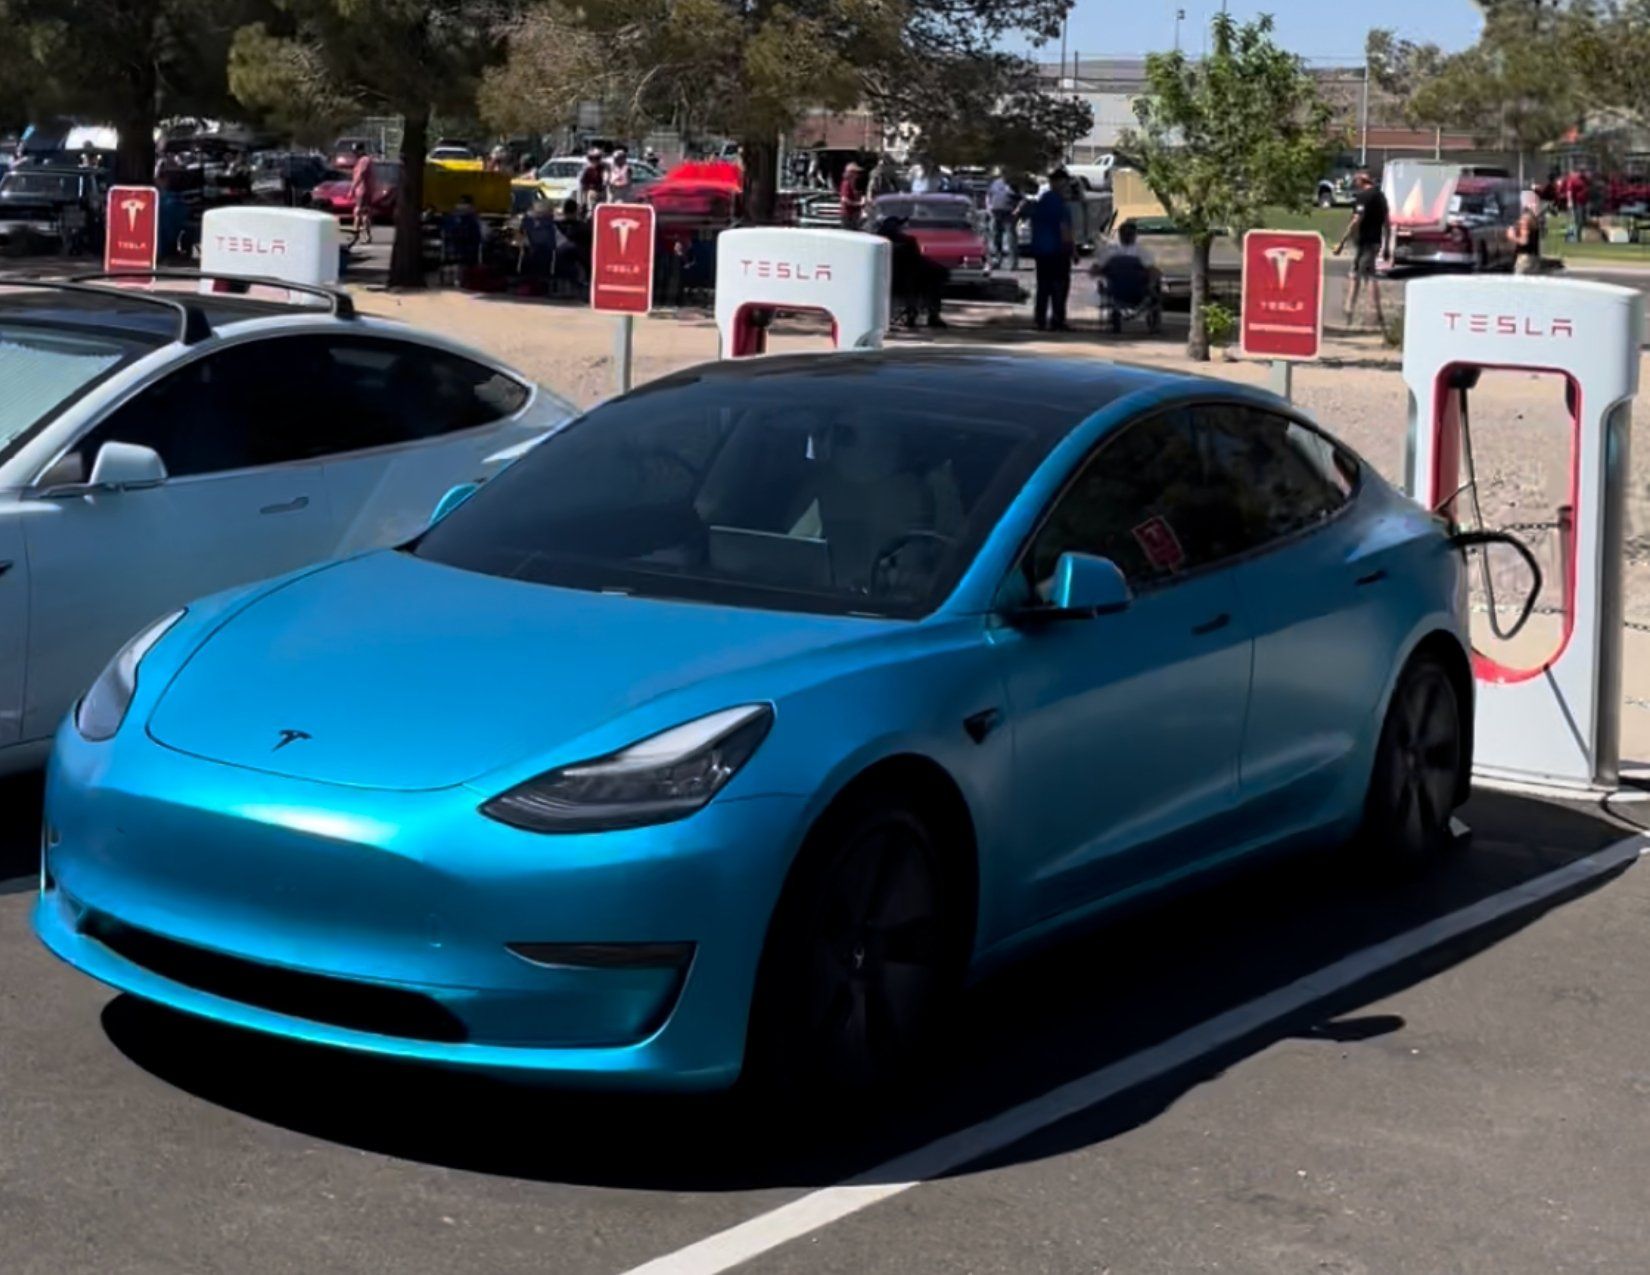 Blue Tesla Electric Car charging at the Tesla EV charging station in Kingman Arizona